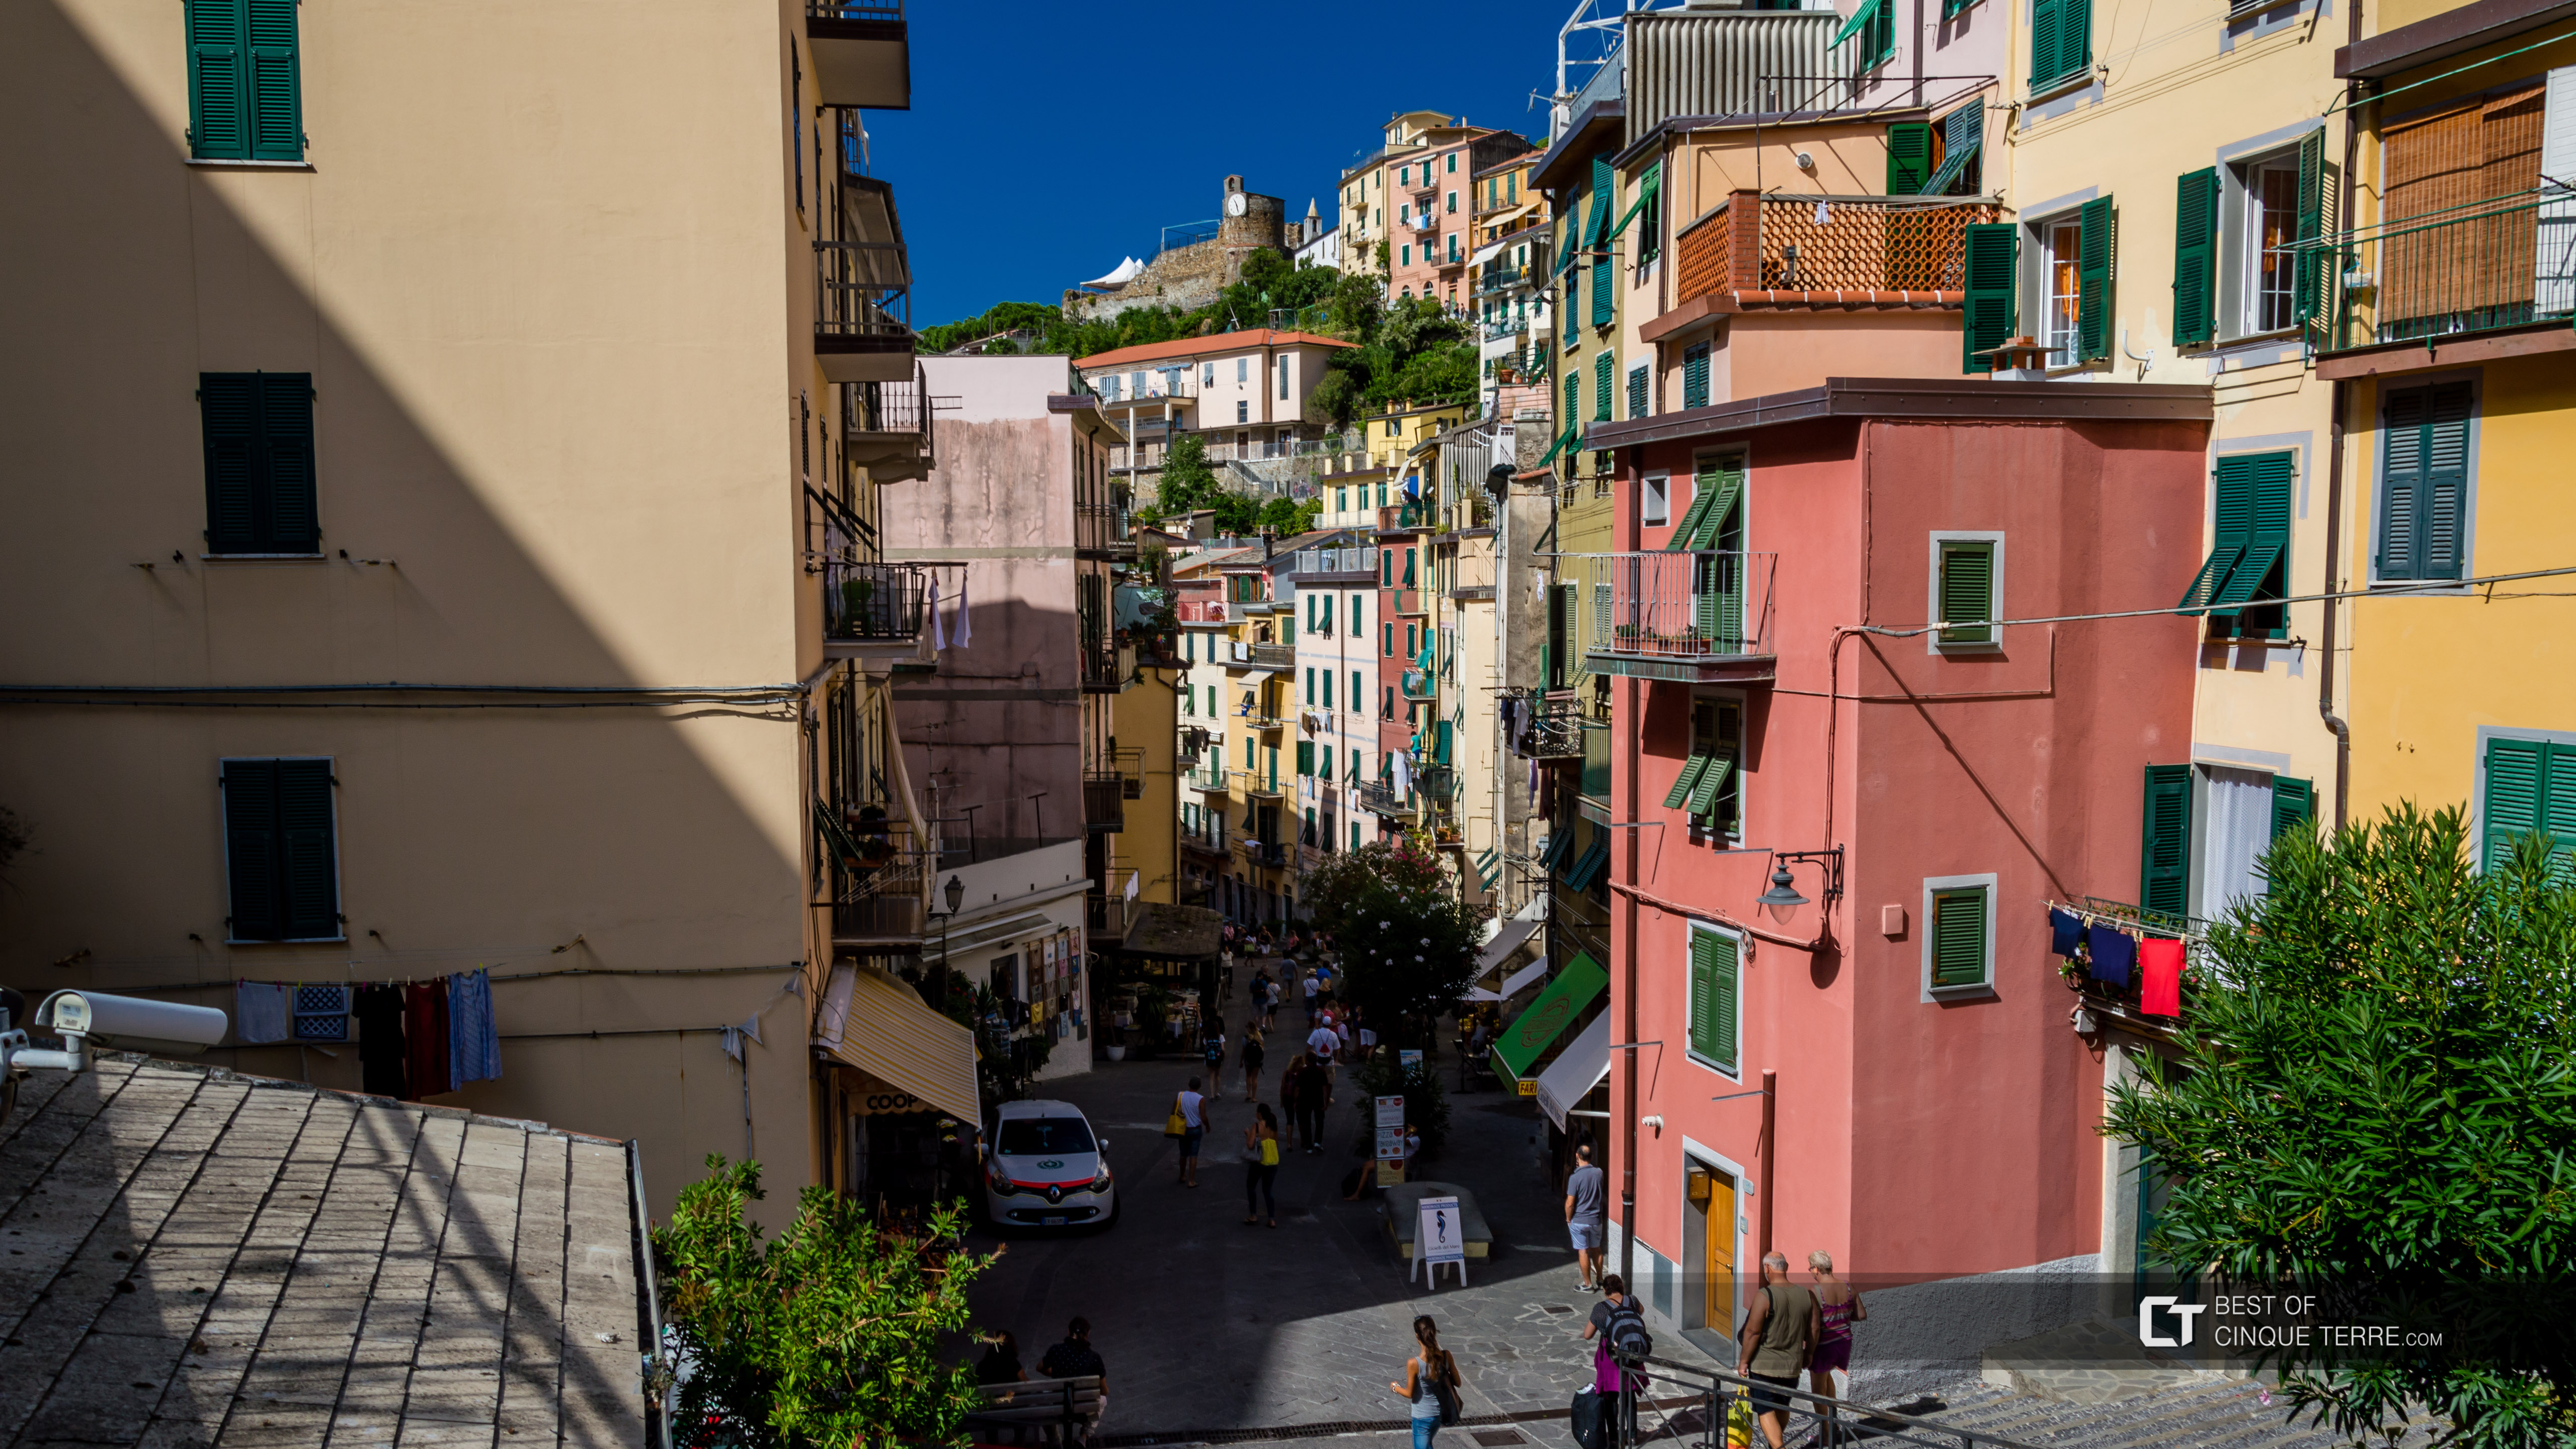 La rue principale, Riomaggiore, Cinque Terre, Italie